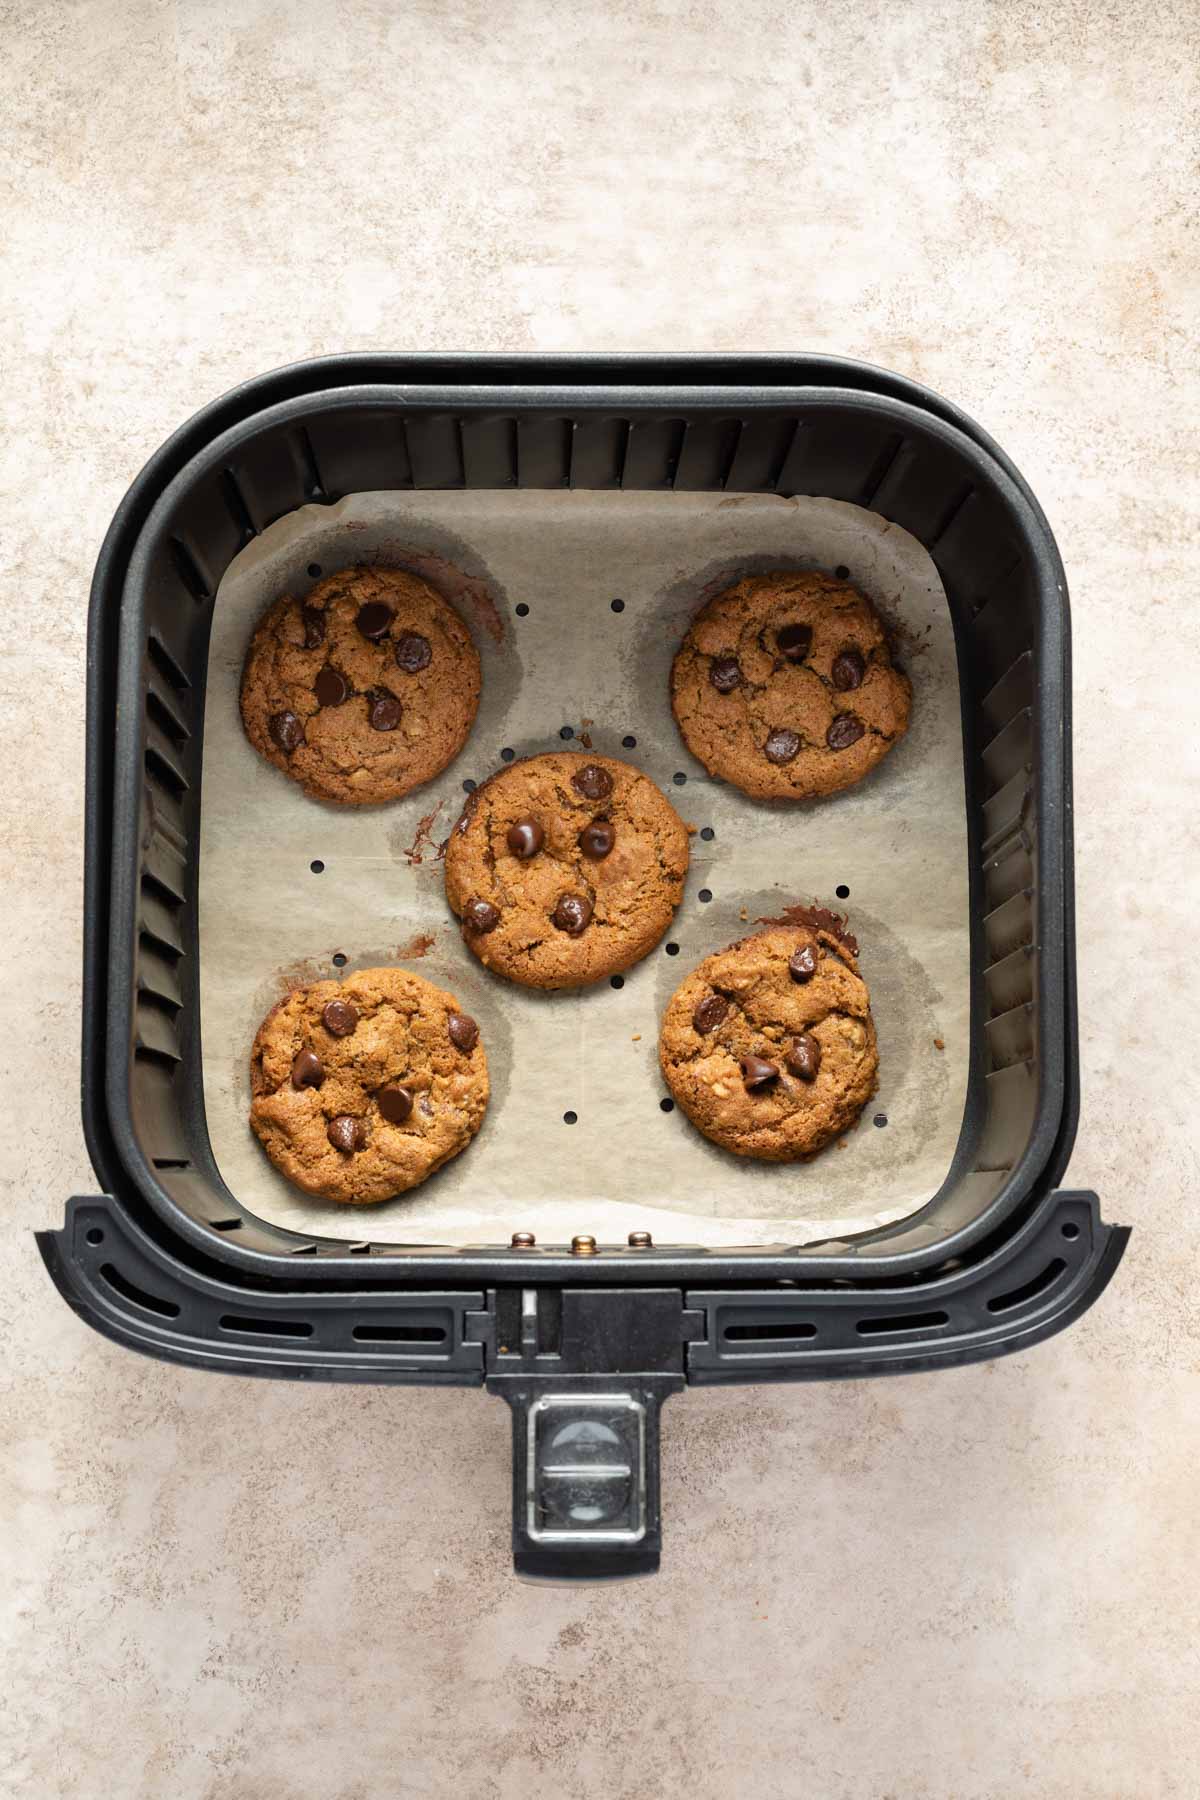 Baked cookies in an air fryer basket.